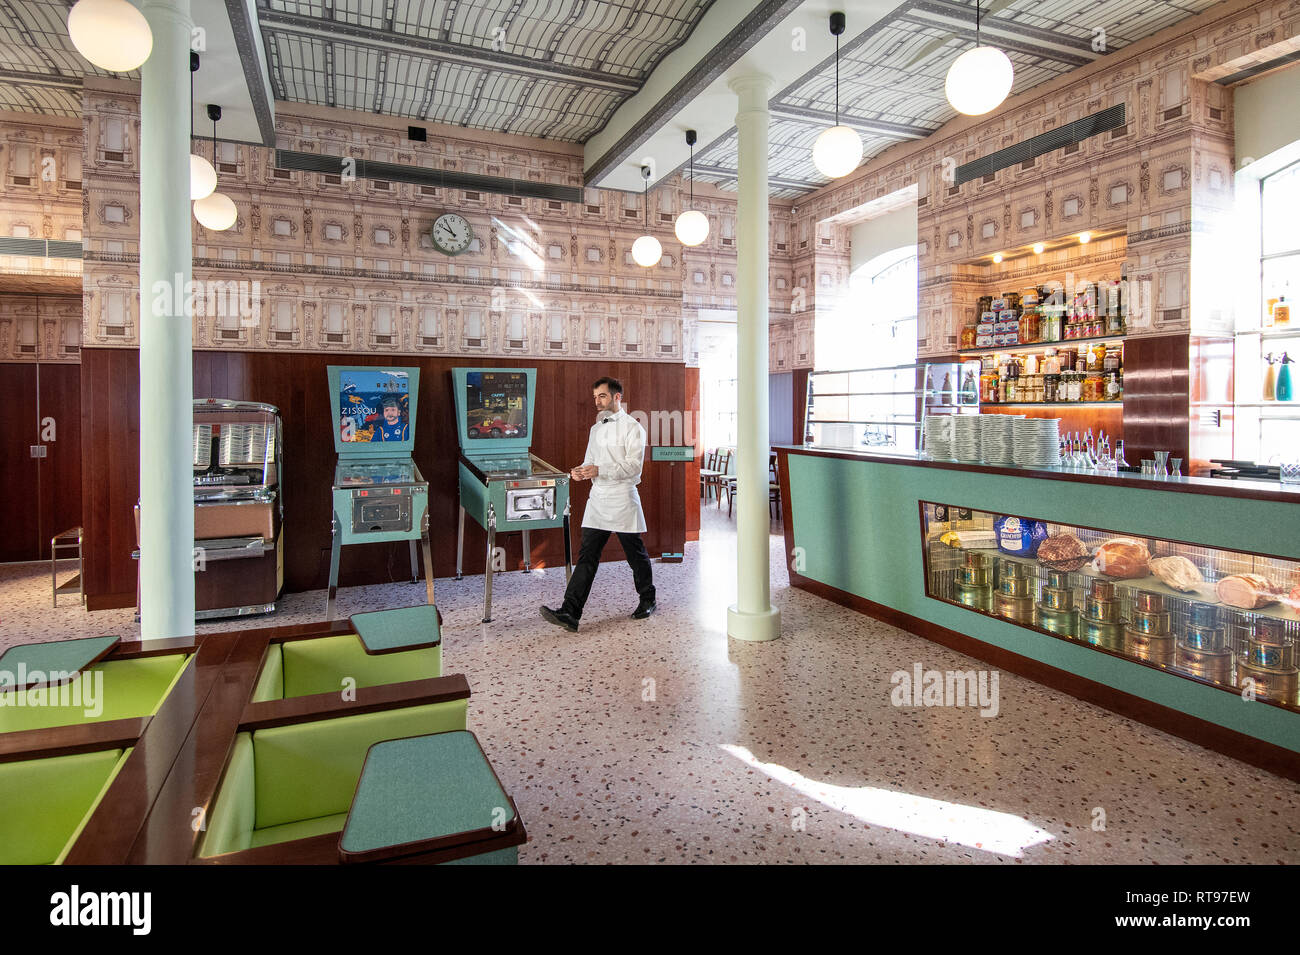 Retro-mirando interiores y muebles en tonos pastel de formica Bar Luce, Wes Anderson-bar y cafetería inspirada en la Fondazione Prada distrito de Milan, Italia. Foto de stock